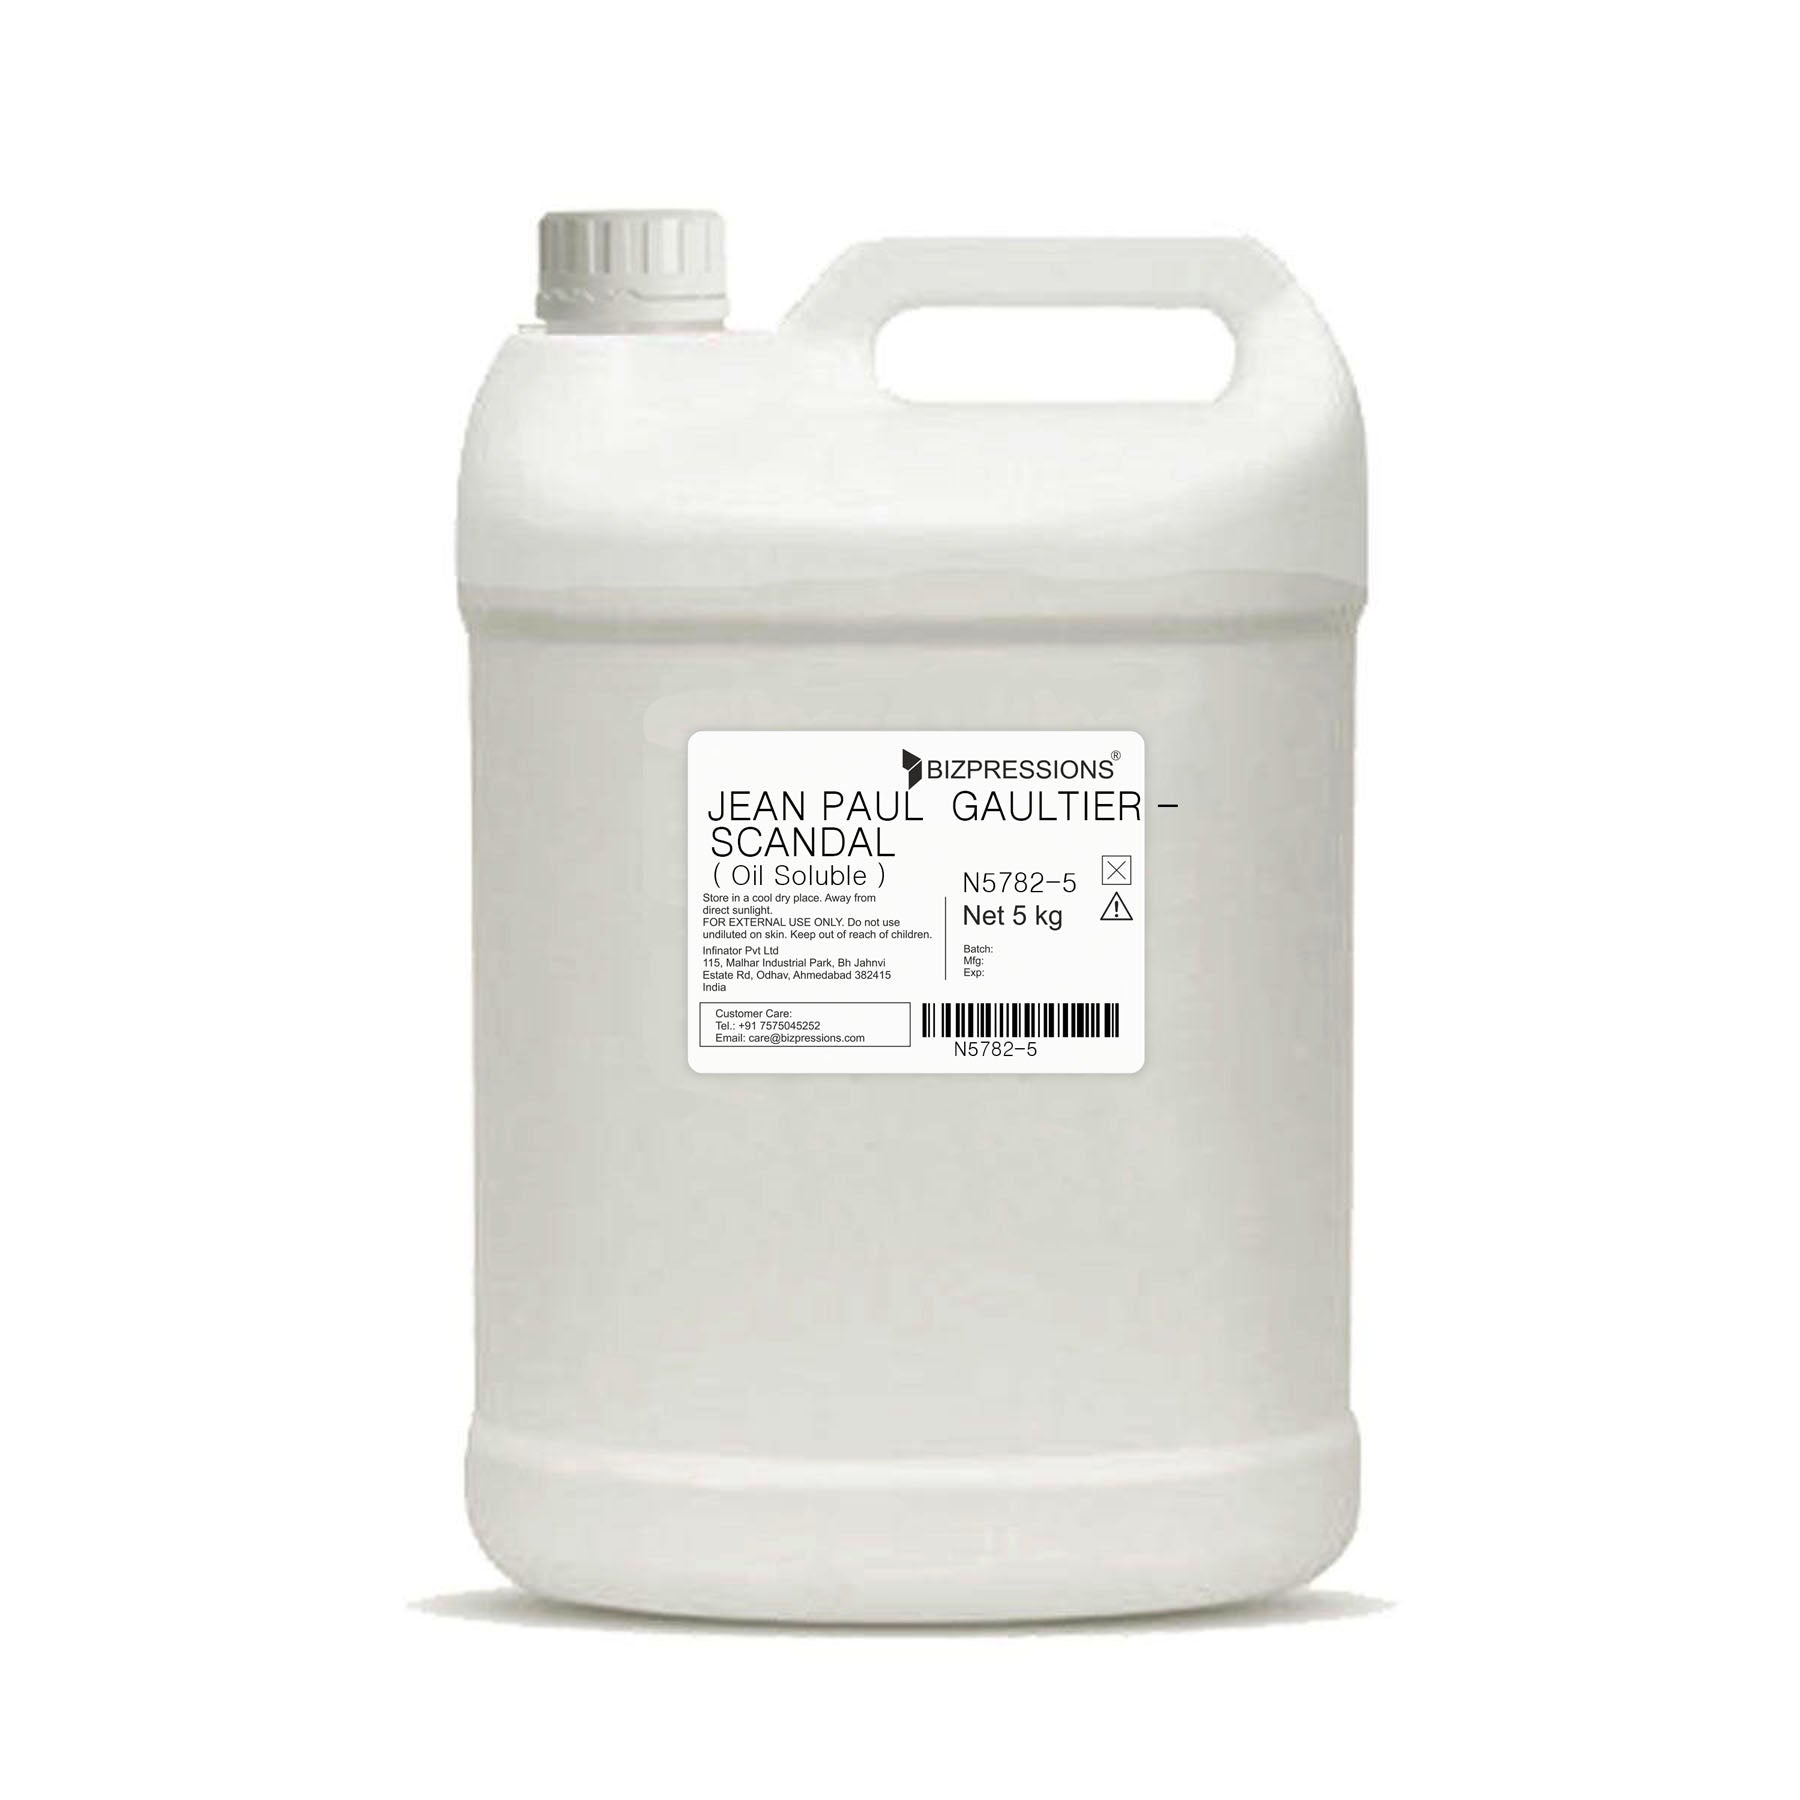 JEAN PAUL GAULTIER - SCANDAL - Fragrance ( Oil Soluble ) - 5 kg